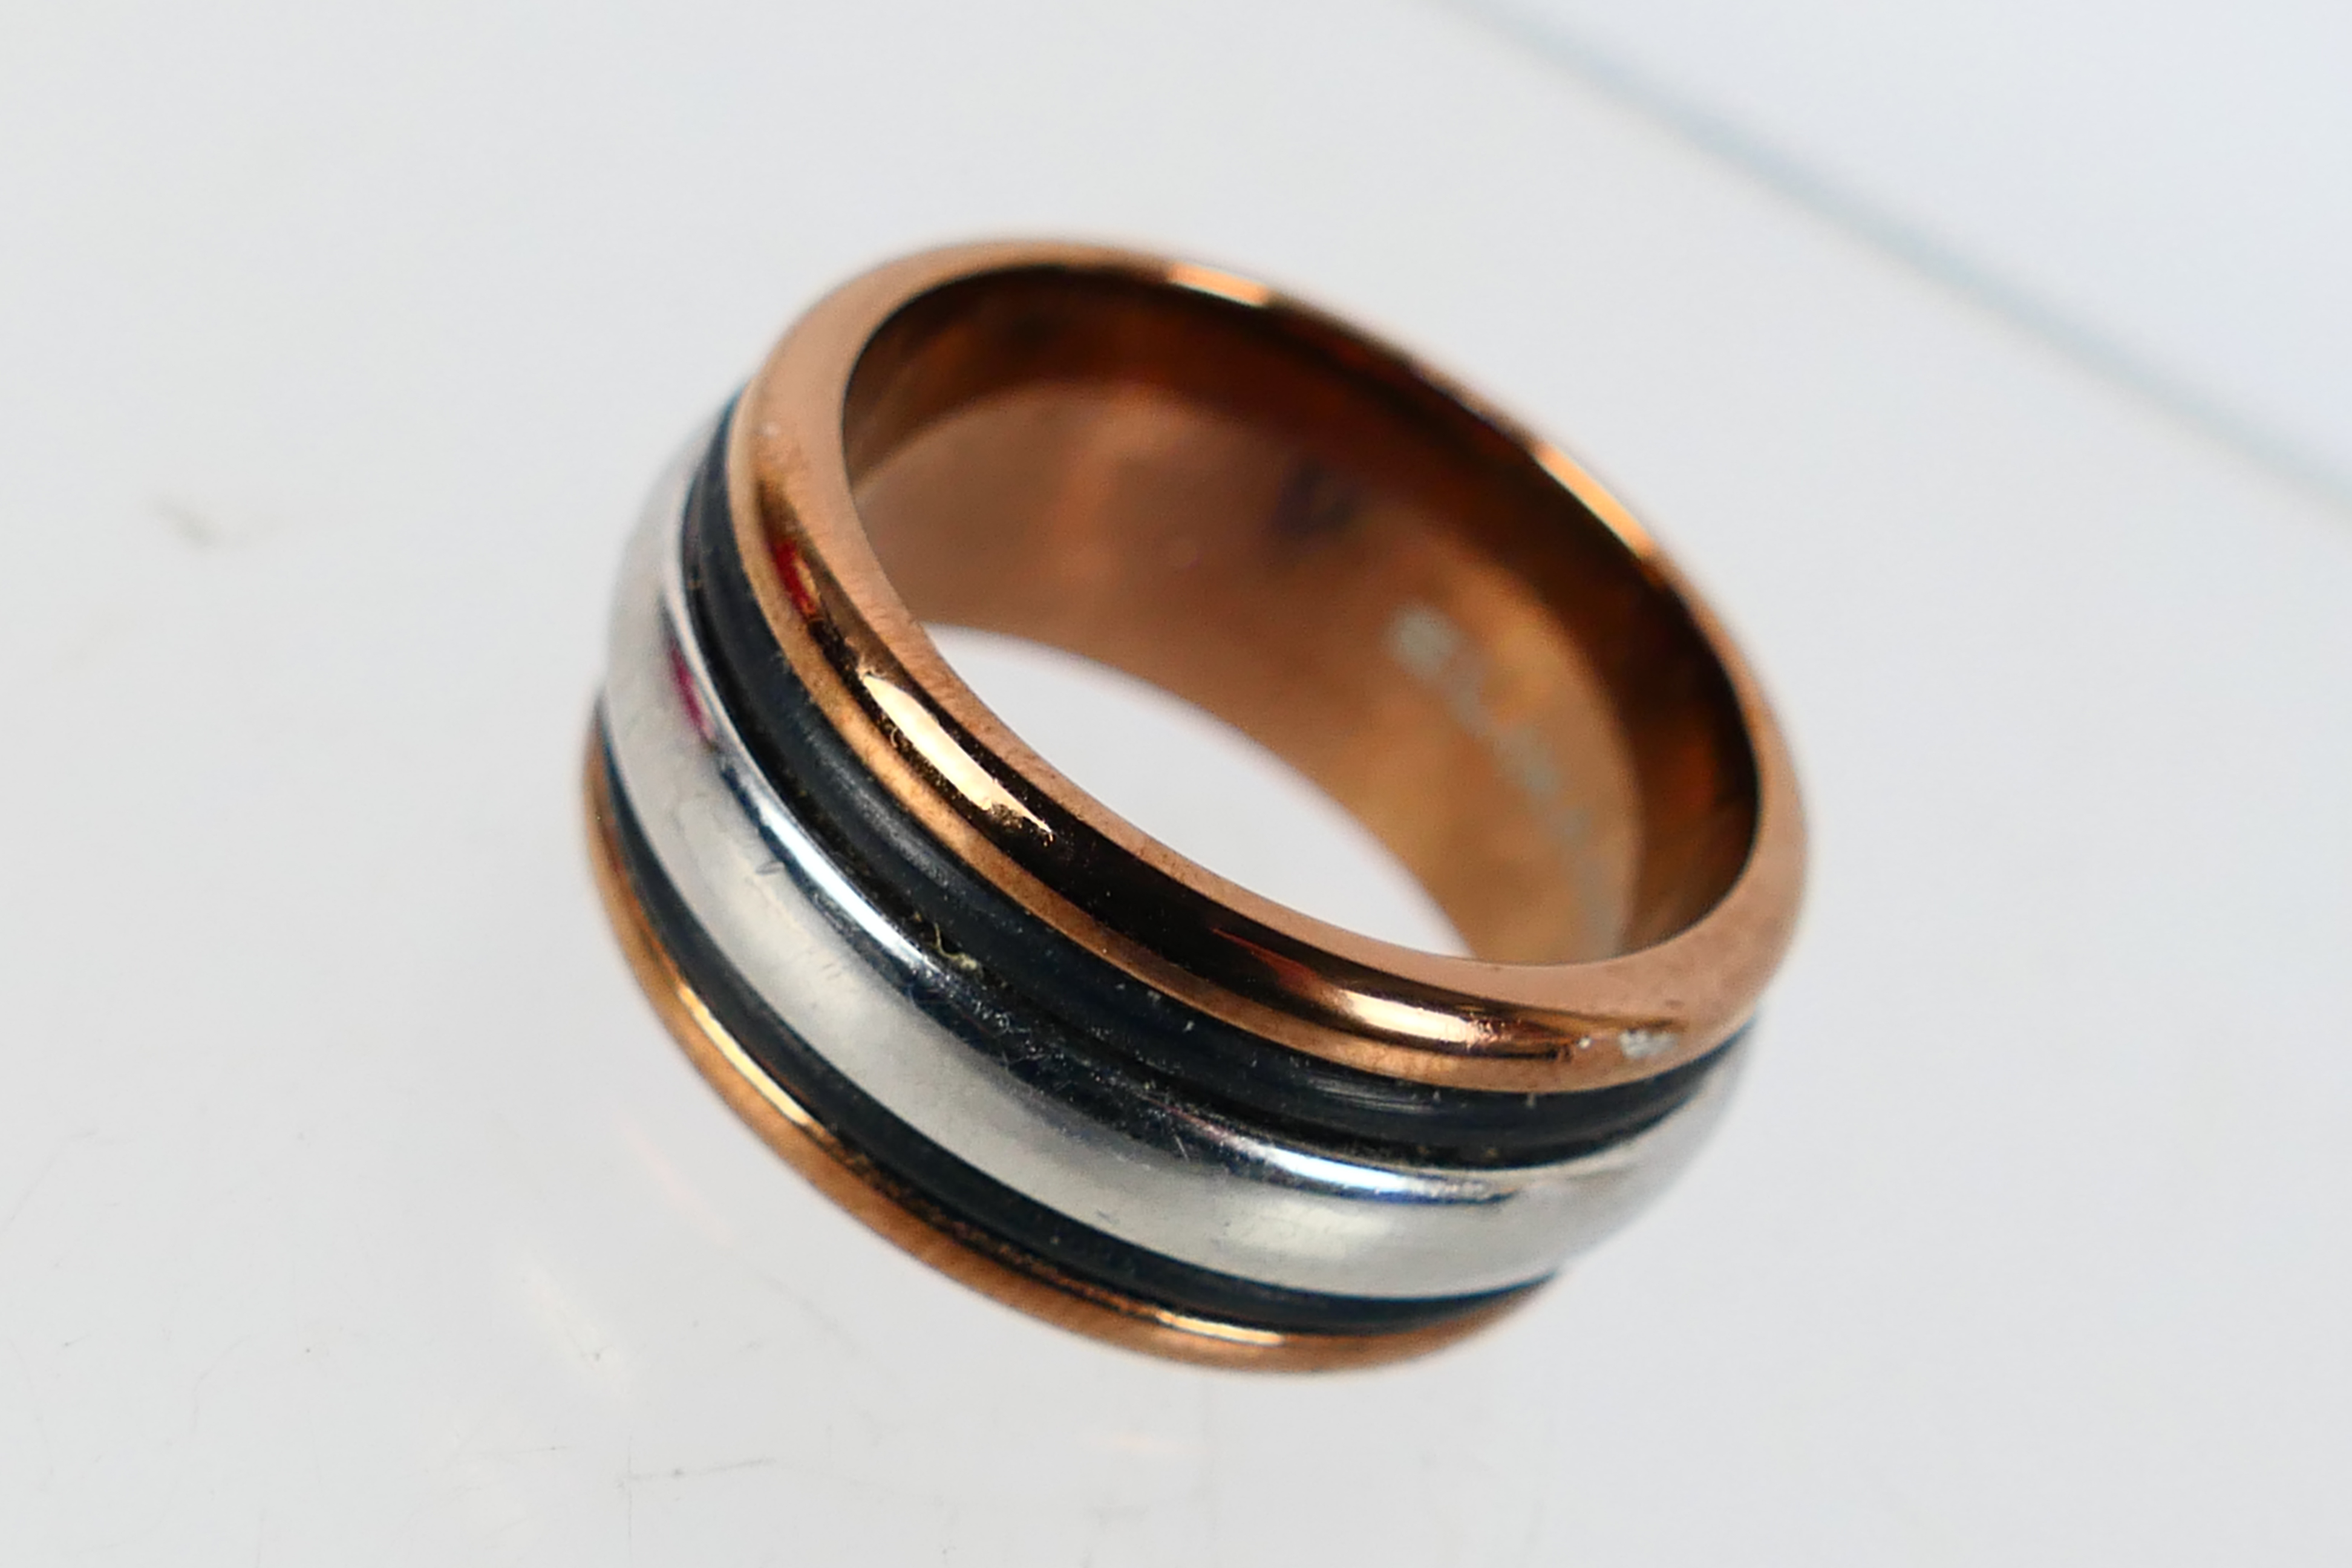 Swarovski, Elixa - A stainless steel Elixa rose gold coloured ring within a Swarovski box. - Image 2 of 4